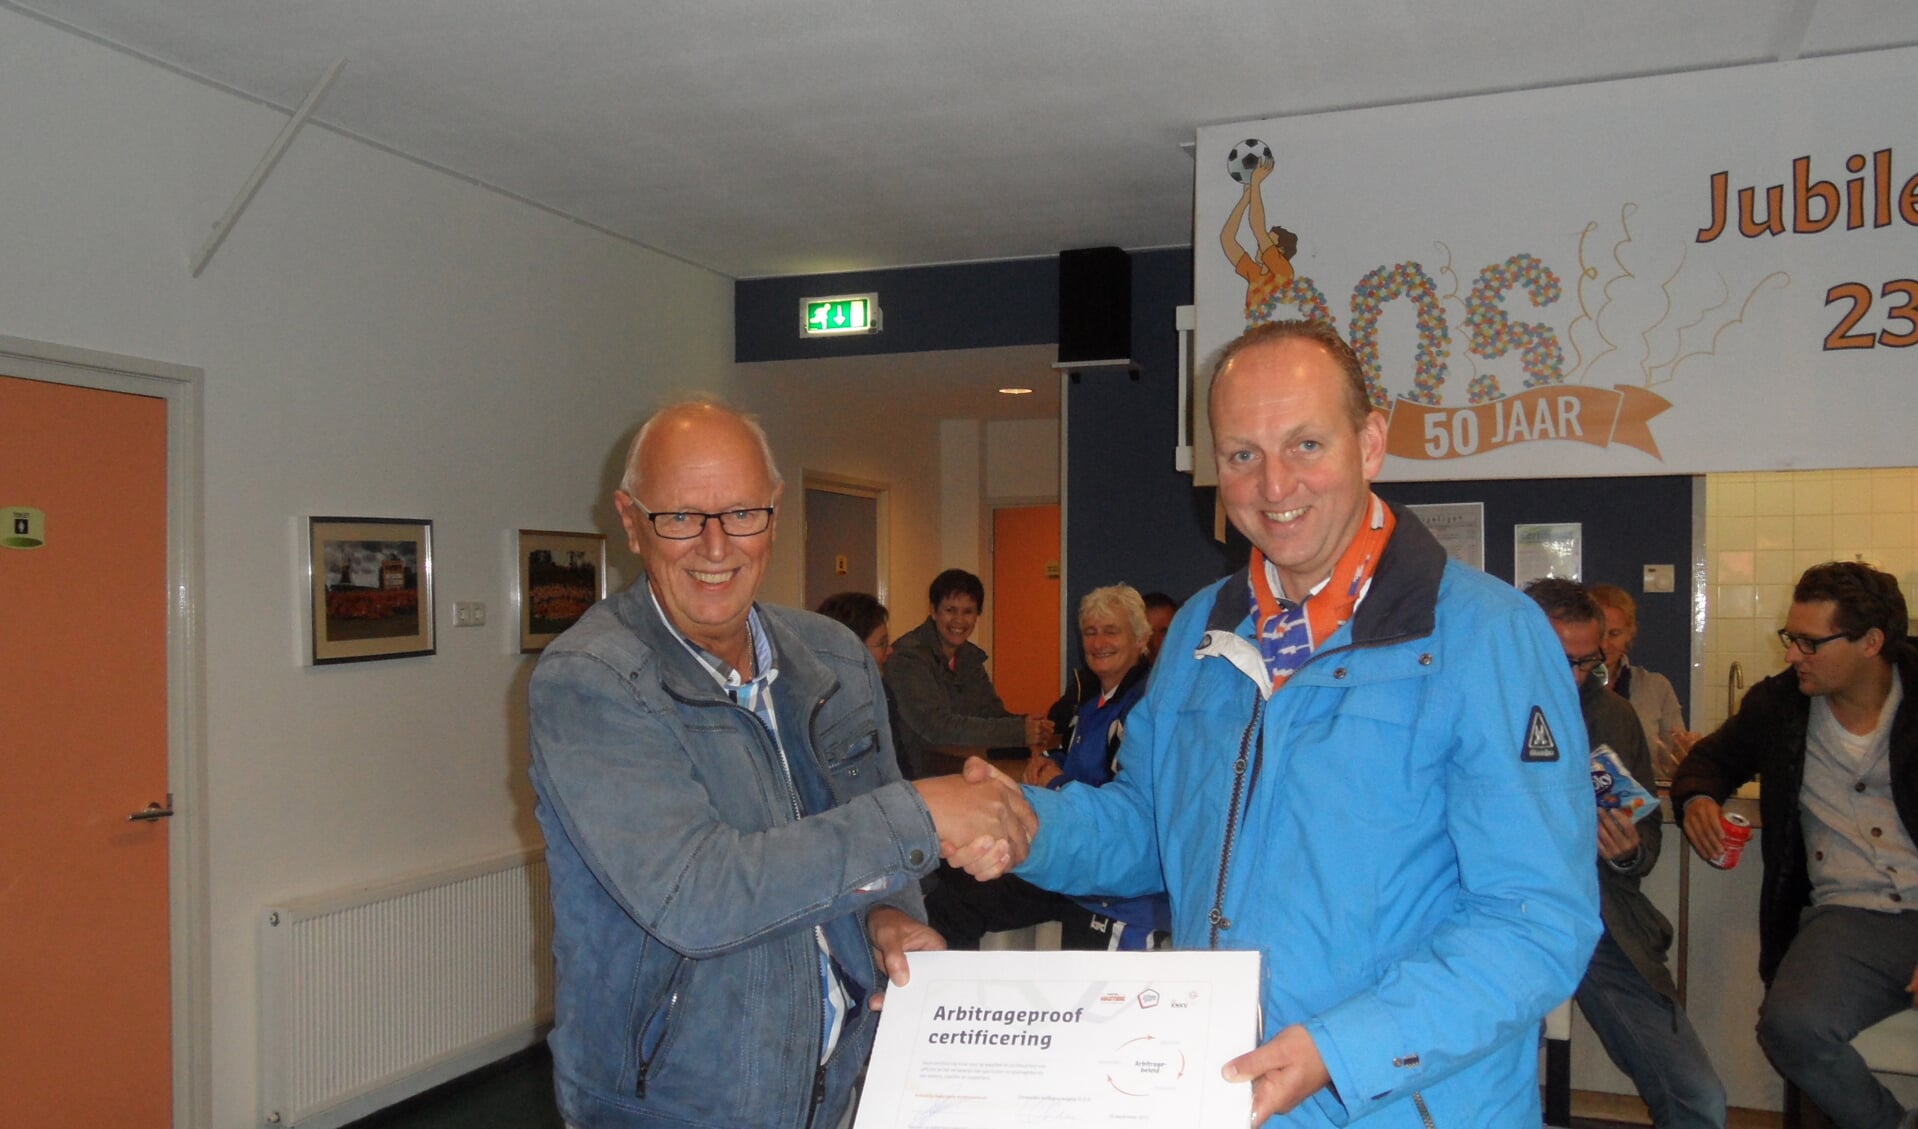  Voorzitter Cornel Boere ontvangt uit handen van Hendrik Jan Brandsma van het KNKV het certificaat arbitrageproof.